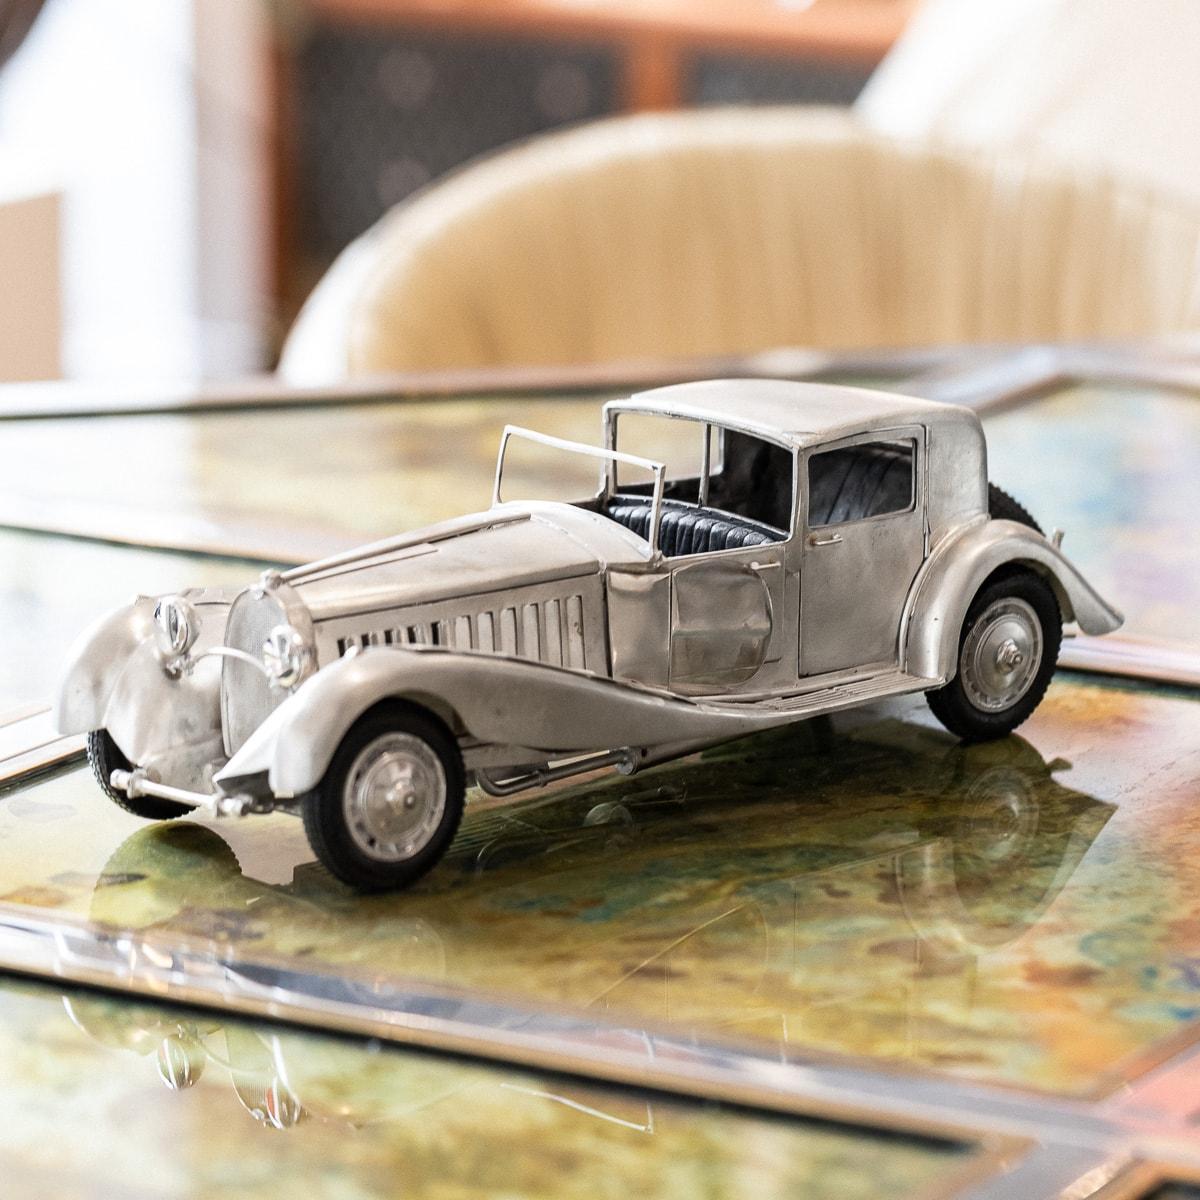 Modèle élégant d'une Bugatti Type 41, mieux connue sous le nom de Bugatti Royale, datant du milieu du 20e siècle. Ce modèle est fabriqué à partir de près de 3 kilogrammes d'argent massif avec la plus grande attention aux détails. La voiture est